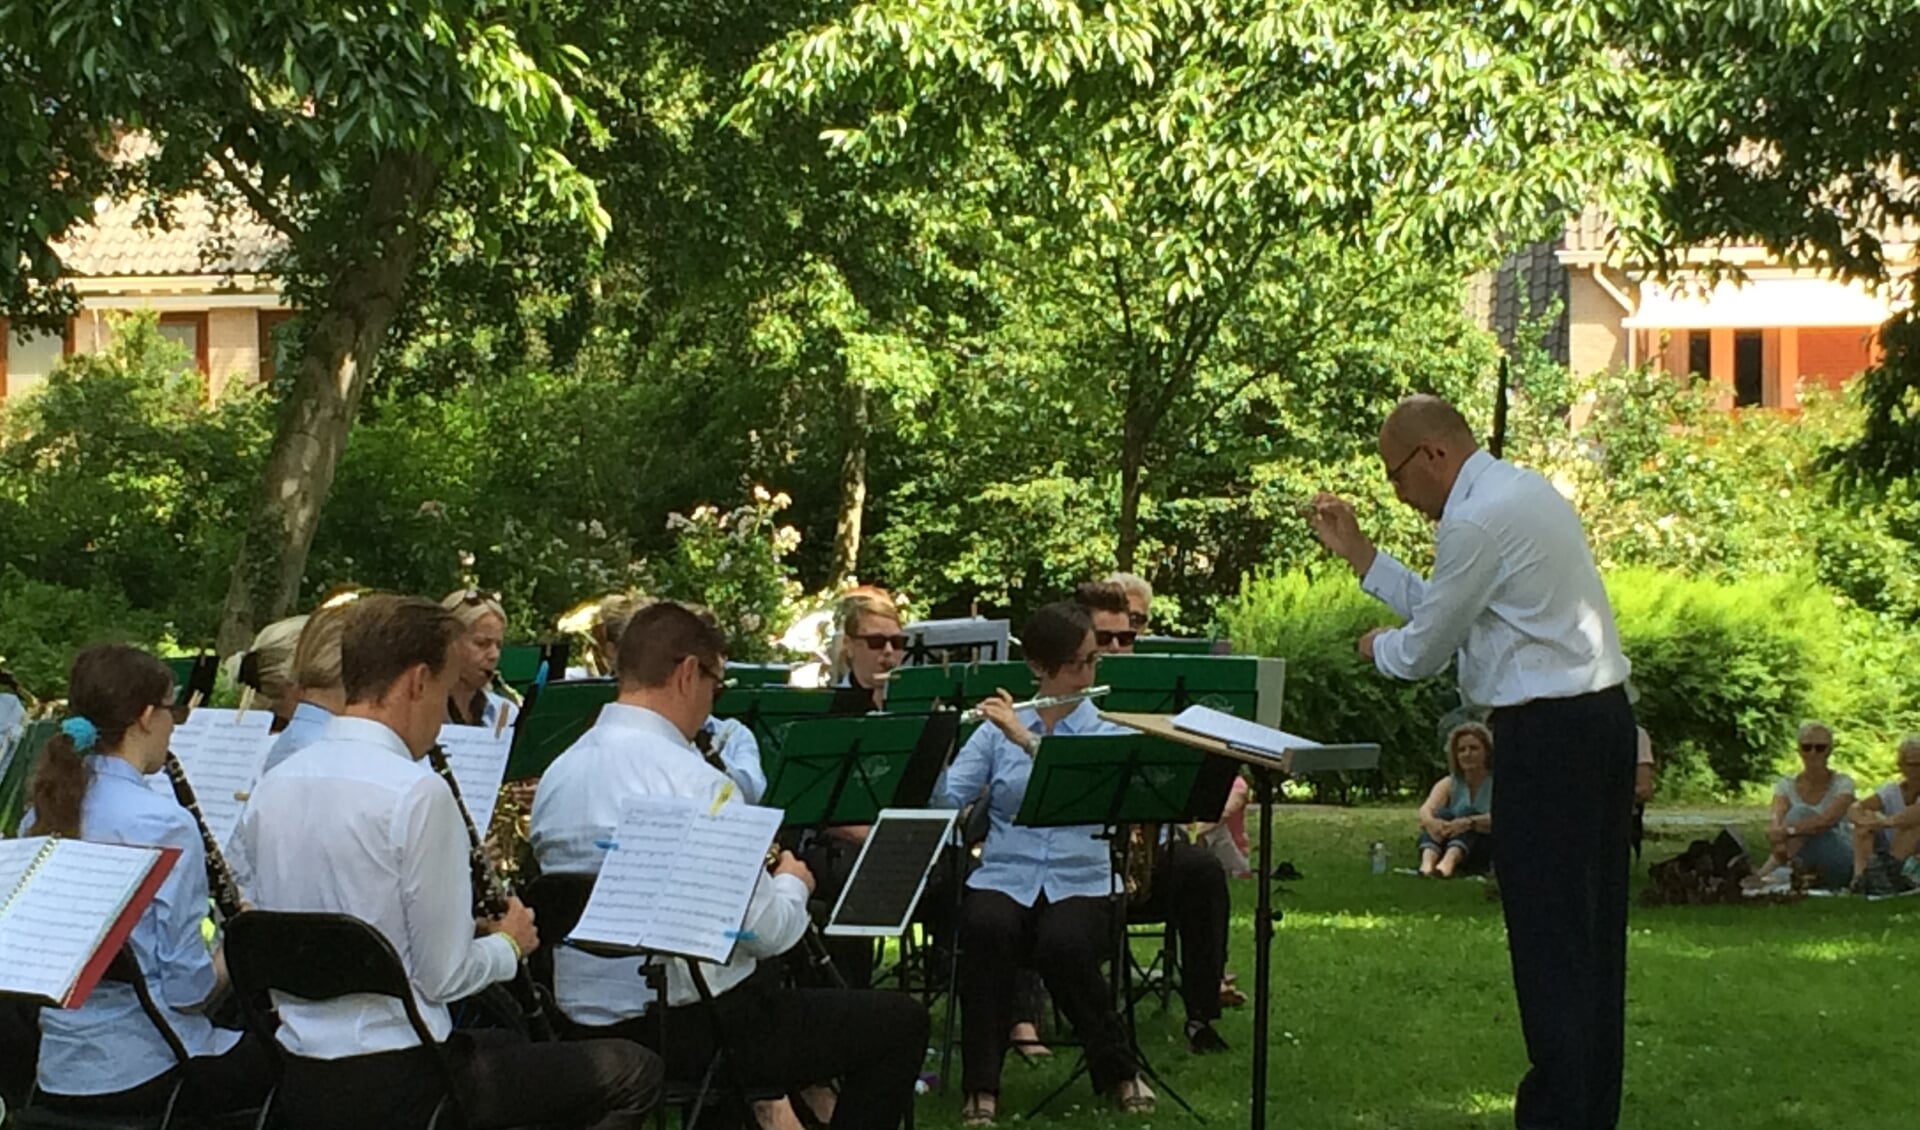 Tijdens het picknickconcert van Da Capo in het Mondriaanpark konden bezoekers al zien hoe de dirigent zijn orkest 'bespeelt'.